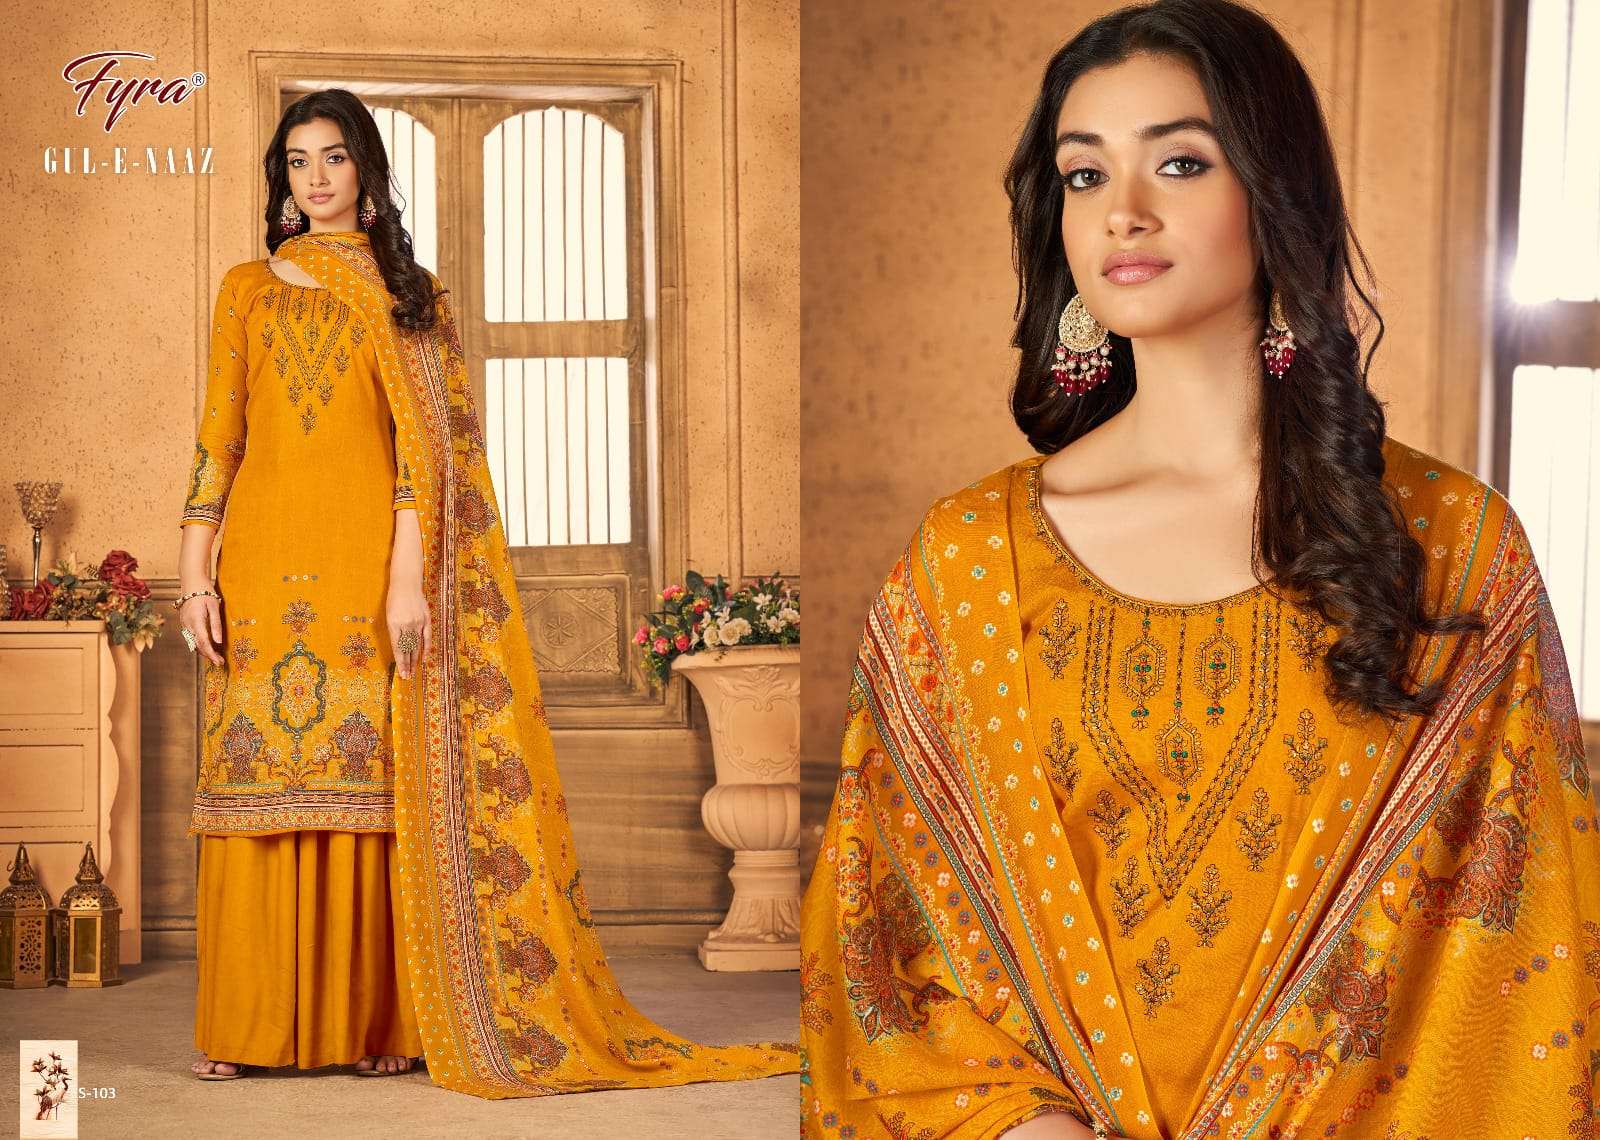 fyra designing gul e naaz pure soft cotton designer salwar suits catalogue online dealer surat